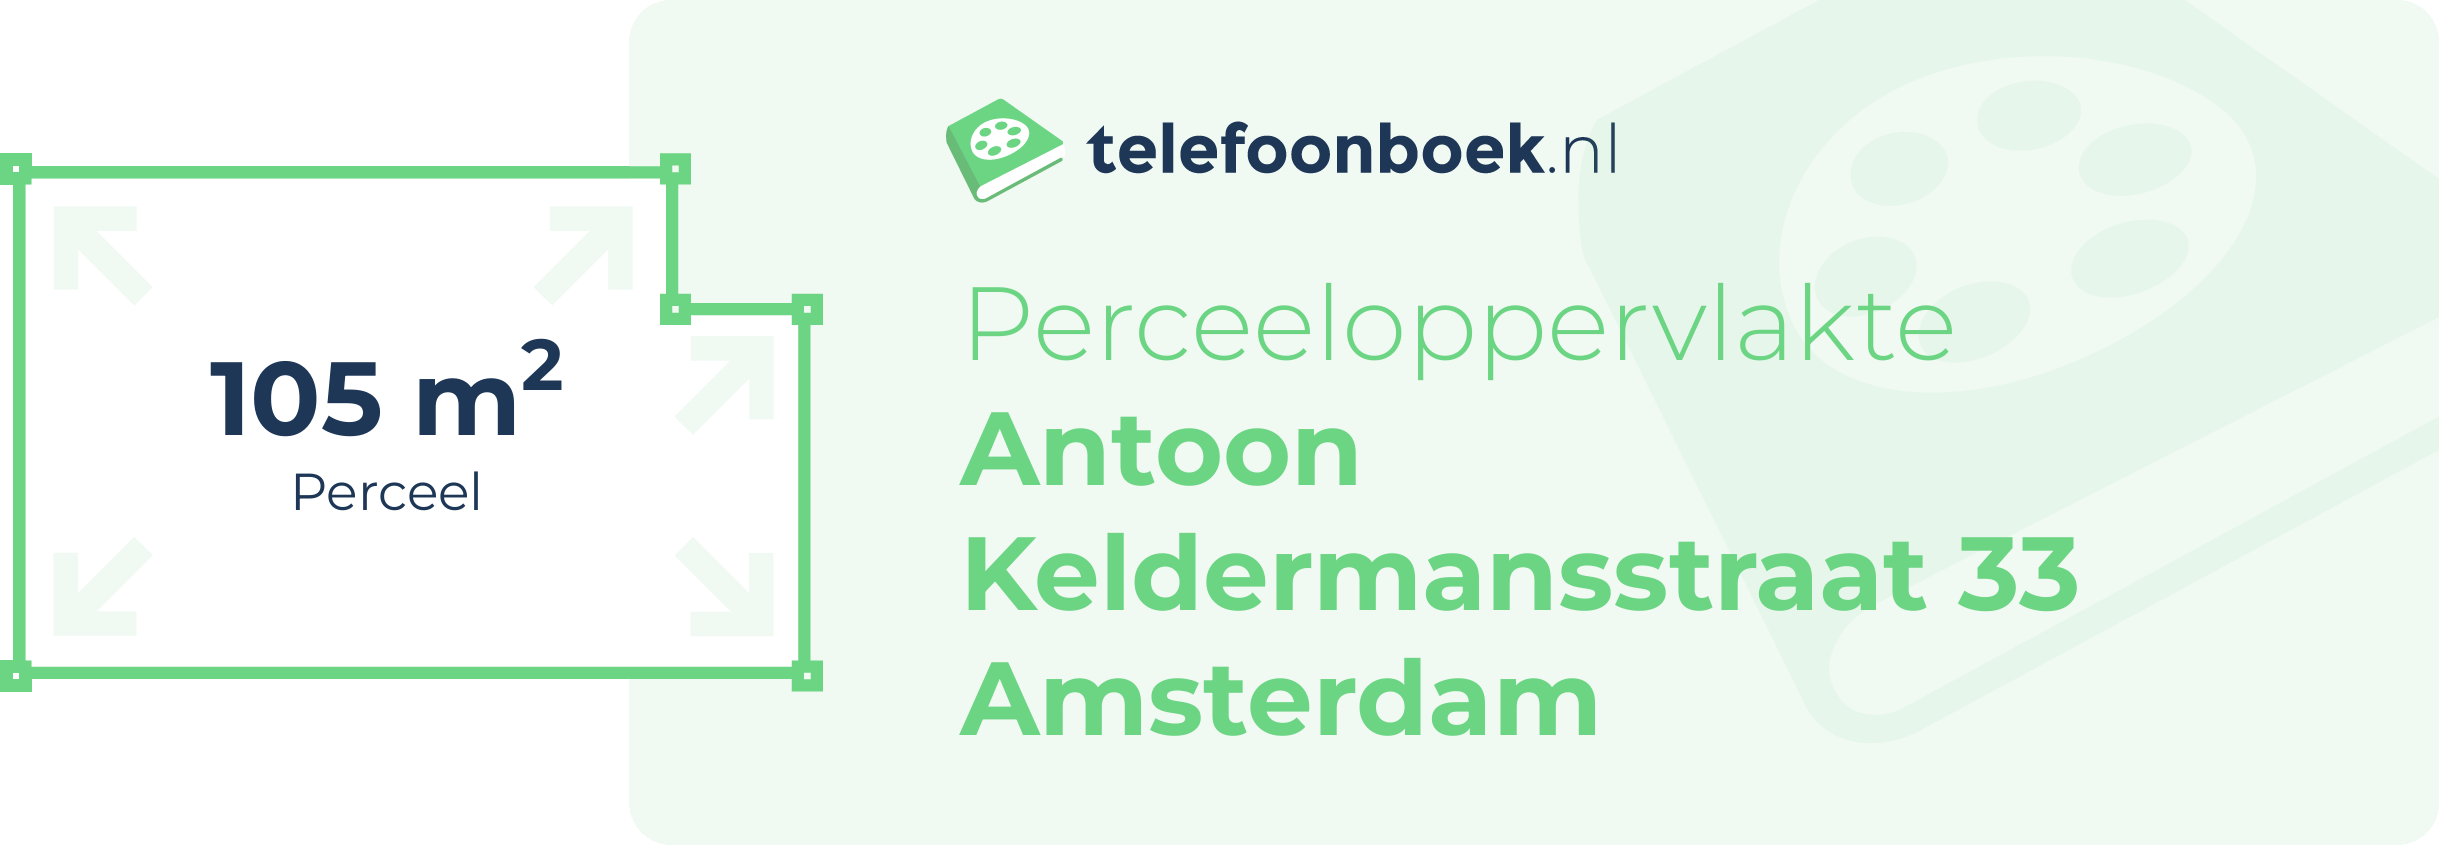 Perceeloppervlakte Antoon Keldermansstraat 33 Amsterdam